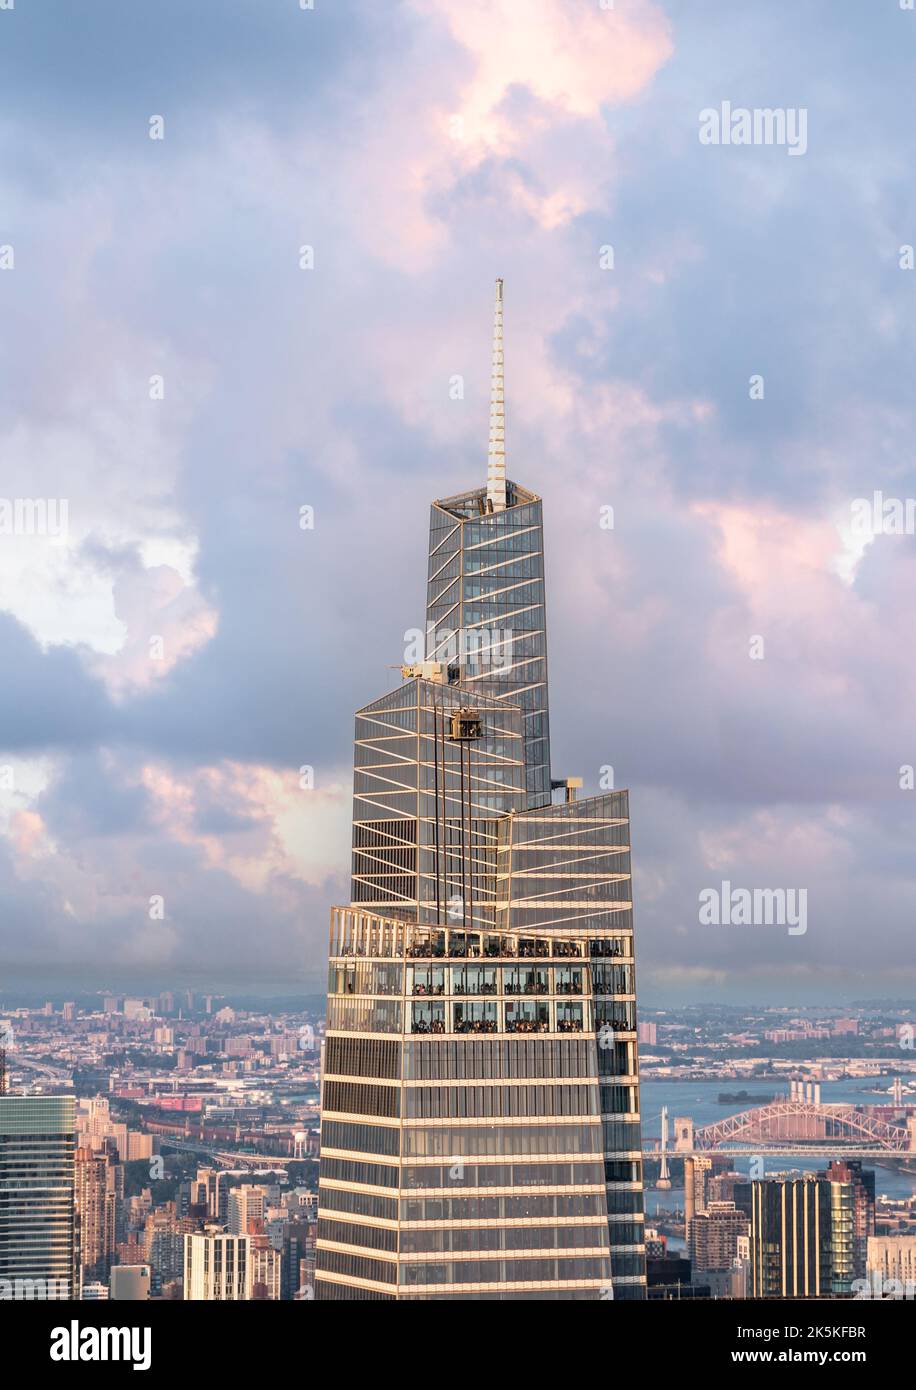 Business grattacielo torre in primo piano con il cielo e le nuvole belle Foto Stock